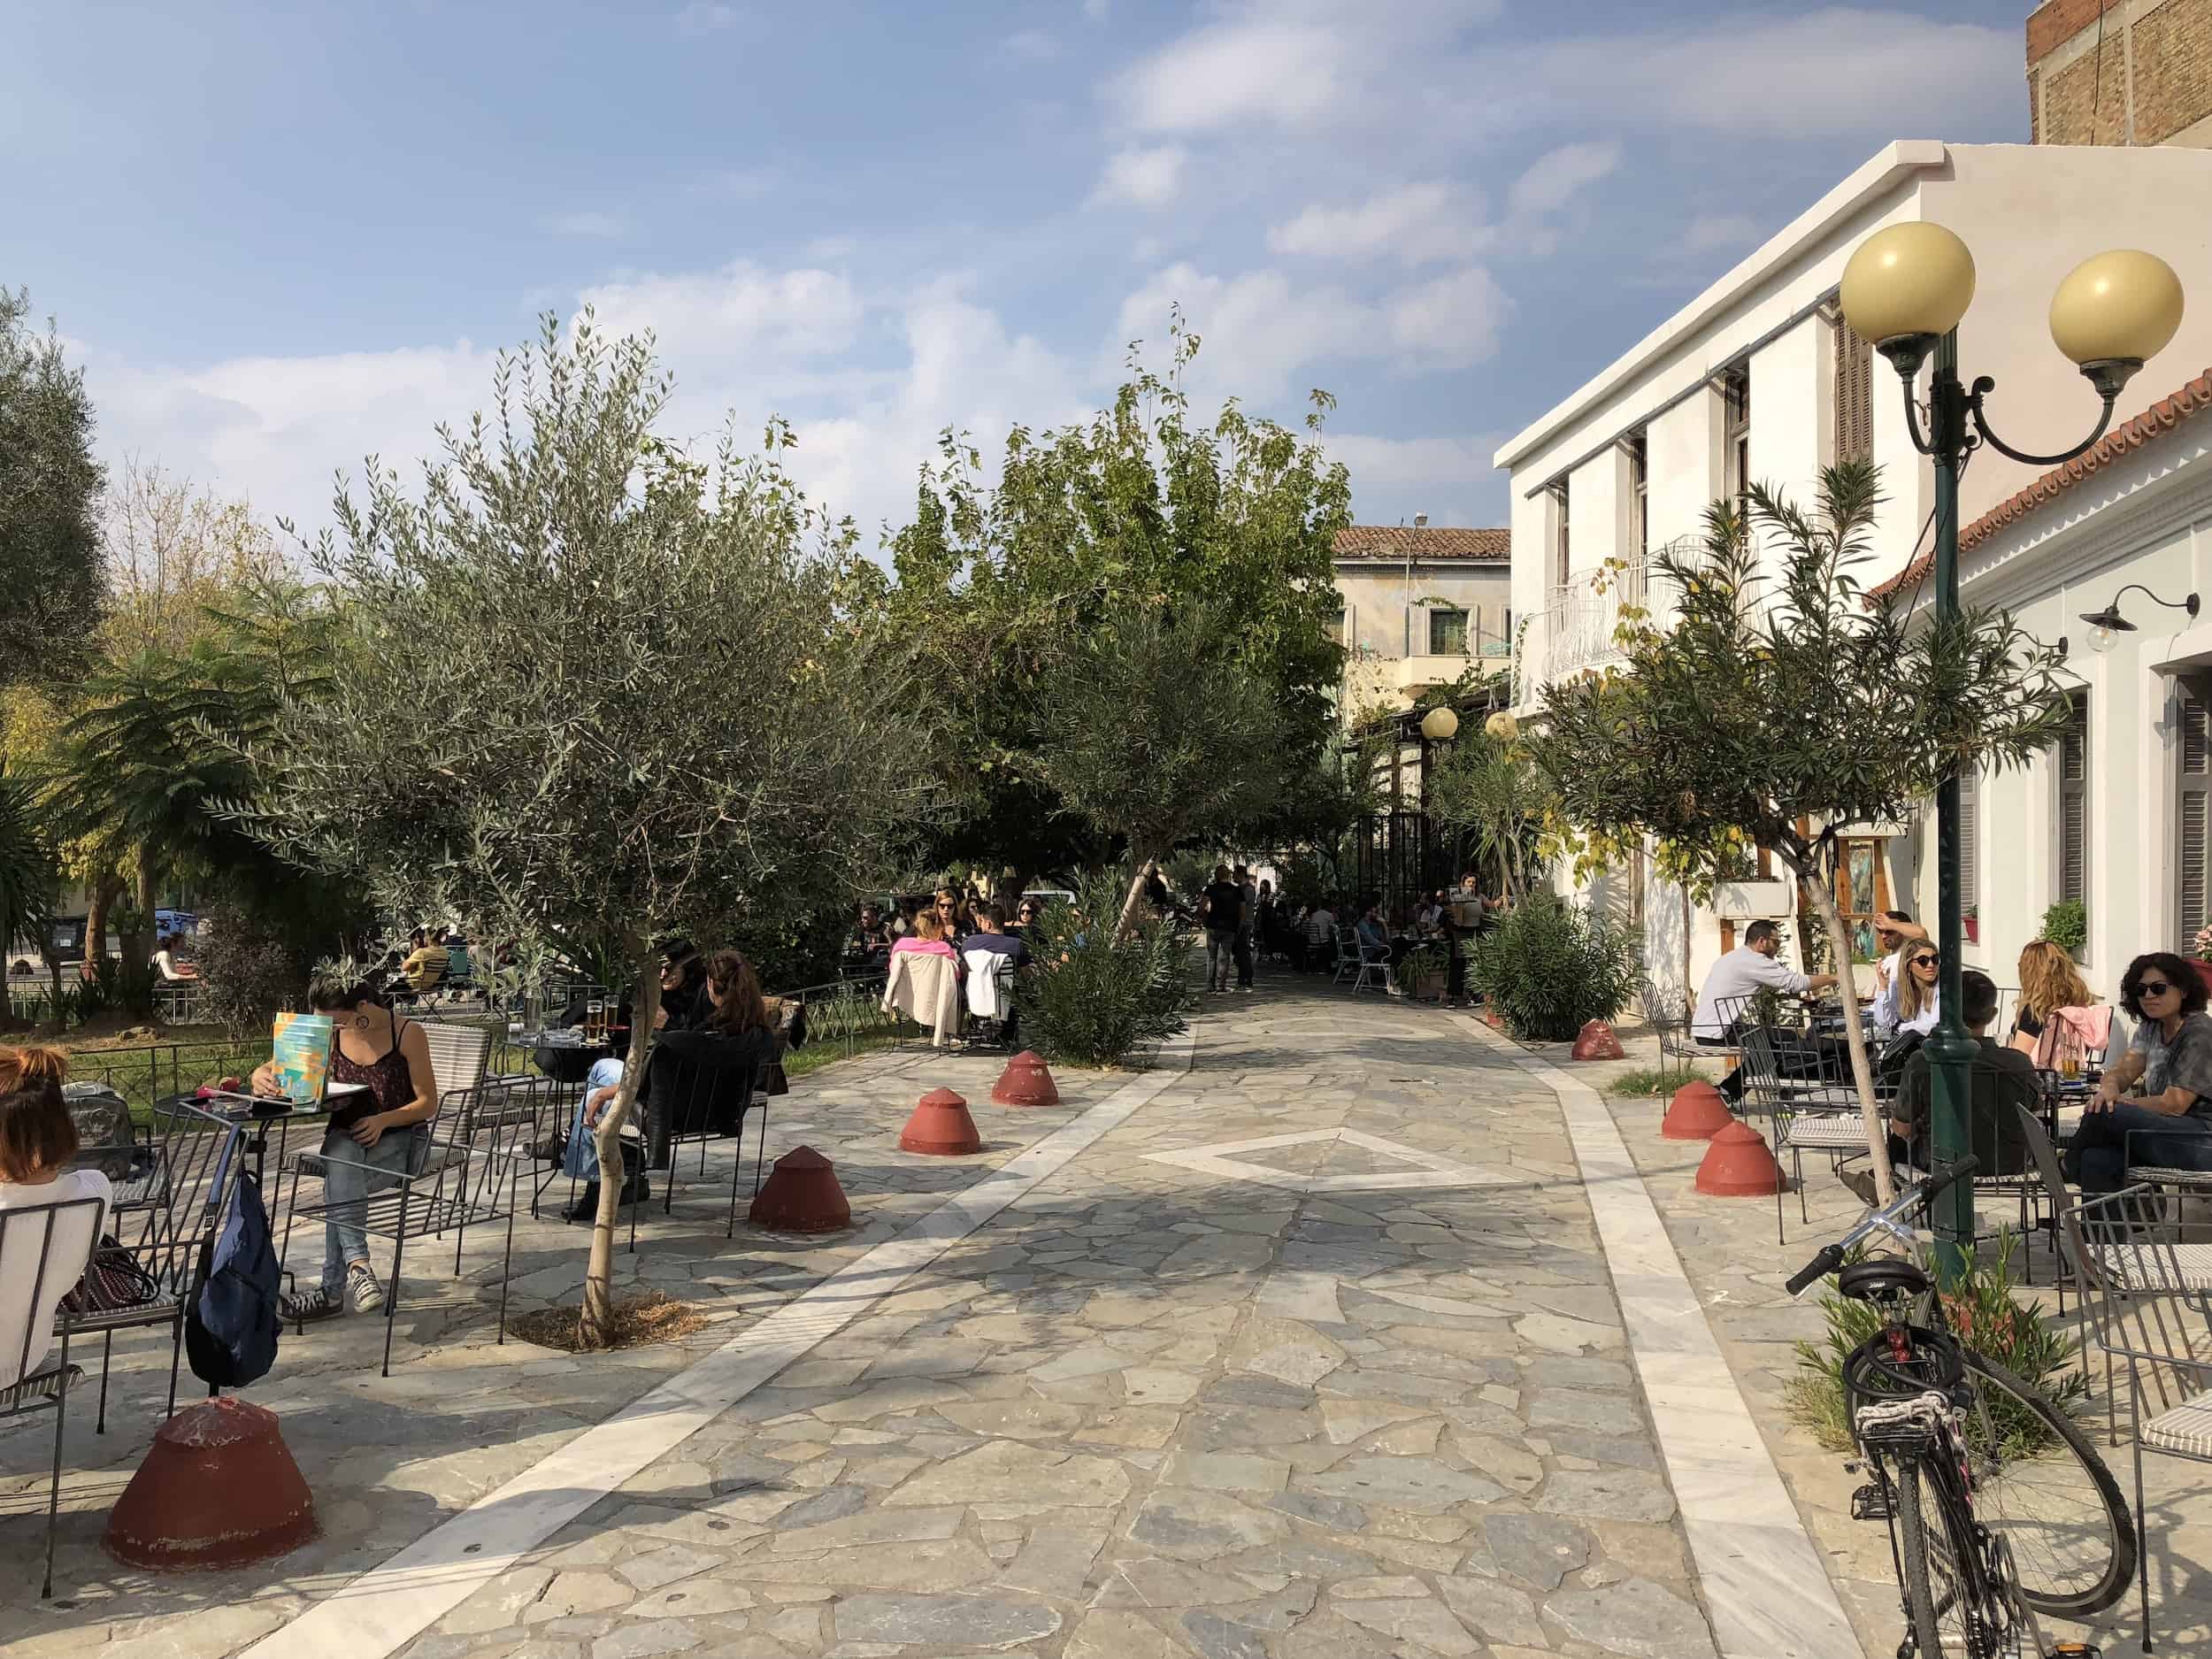 Avdi Square in Athens, Greece